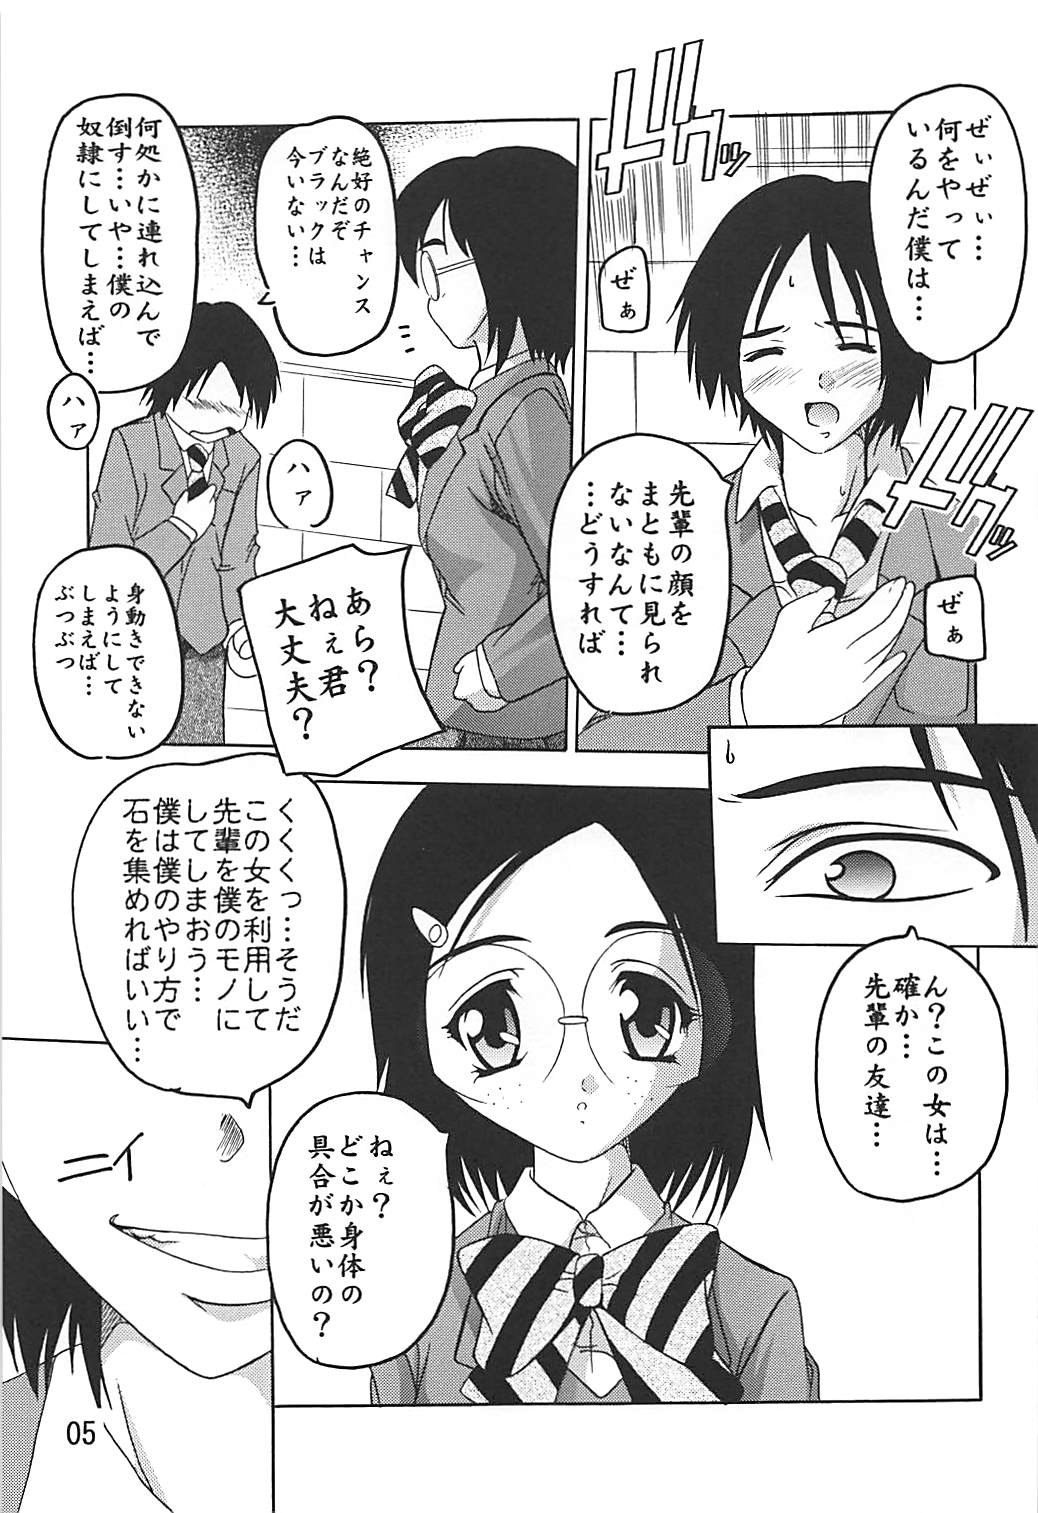 [Studio Q (Natsuka Q-ya)] PUNI CURE 2 (Futari wa Precure) [Digital] page 4 full